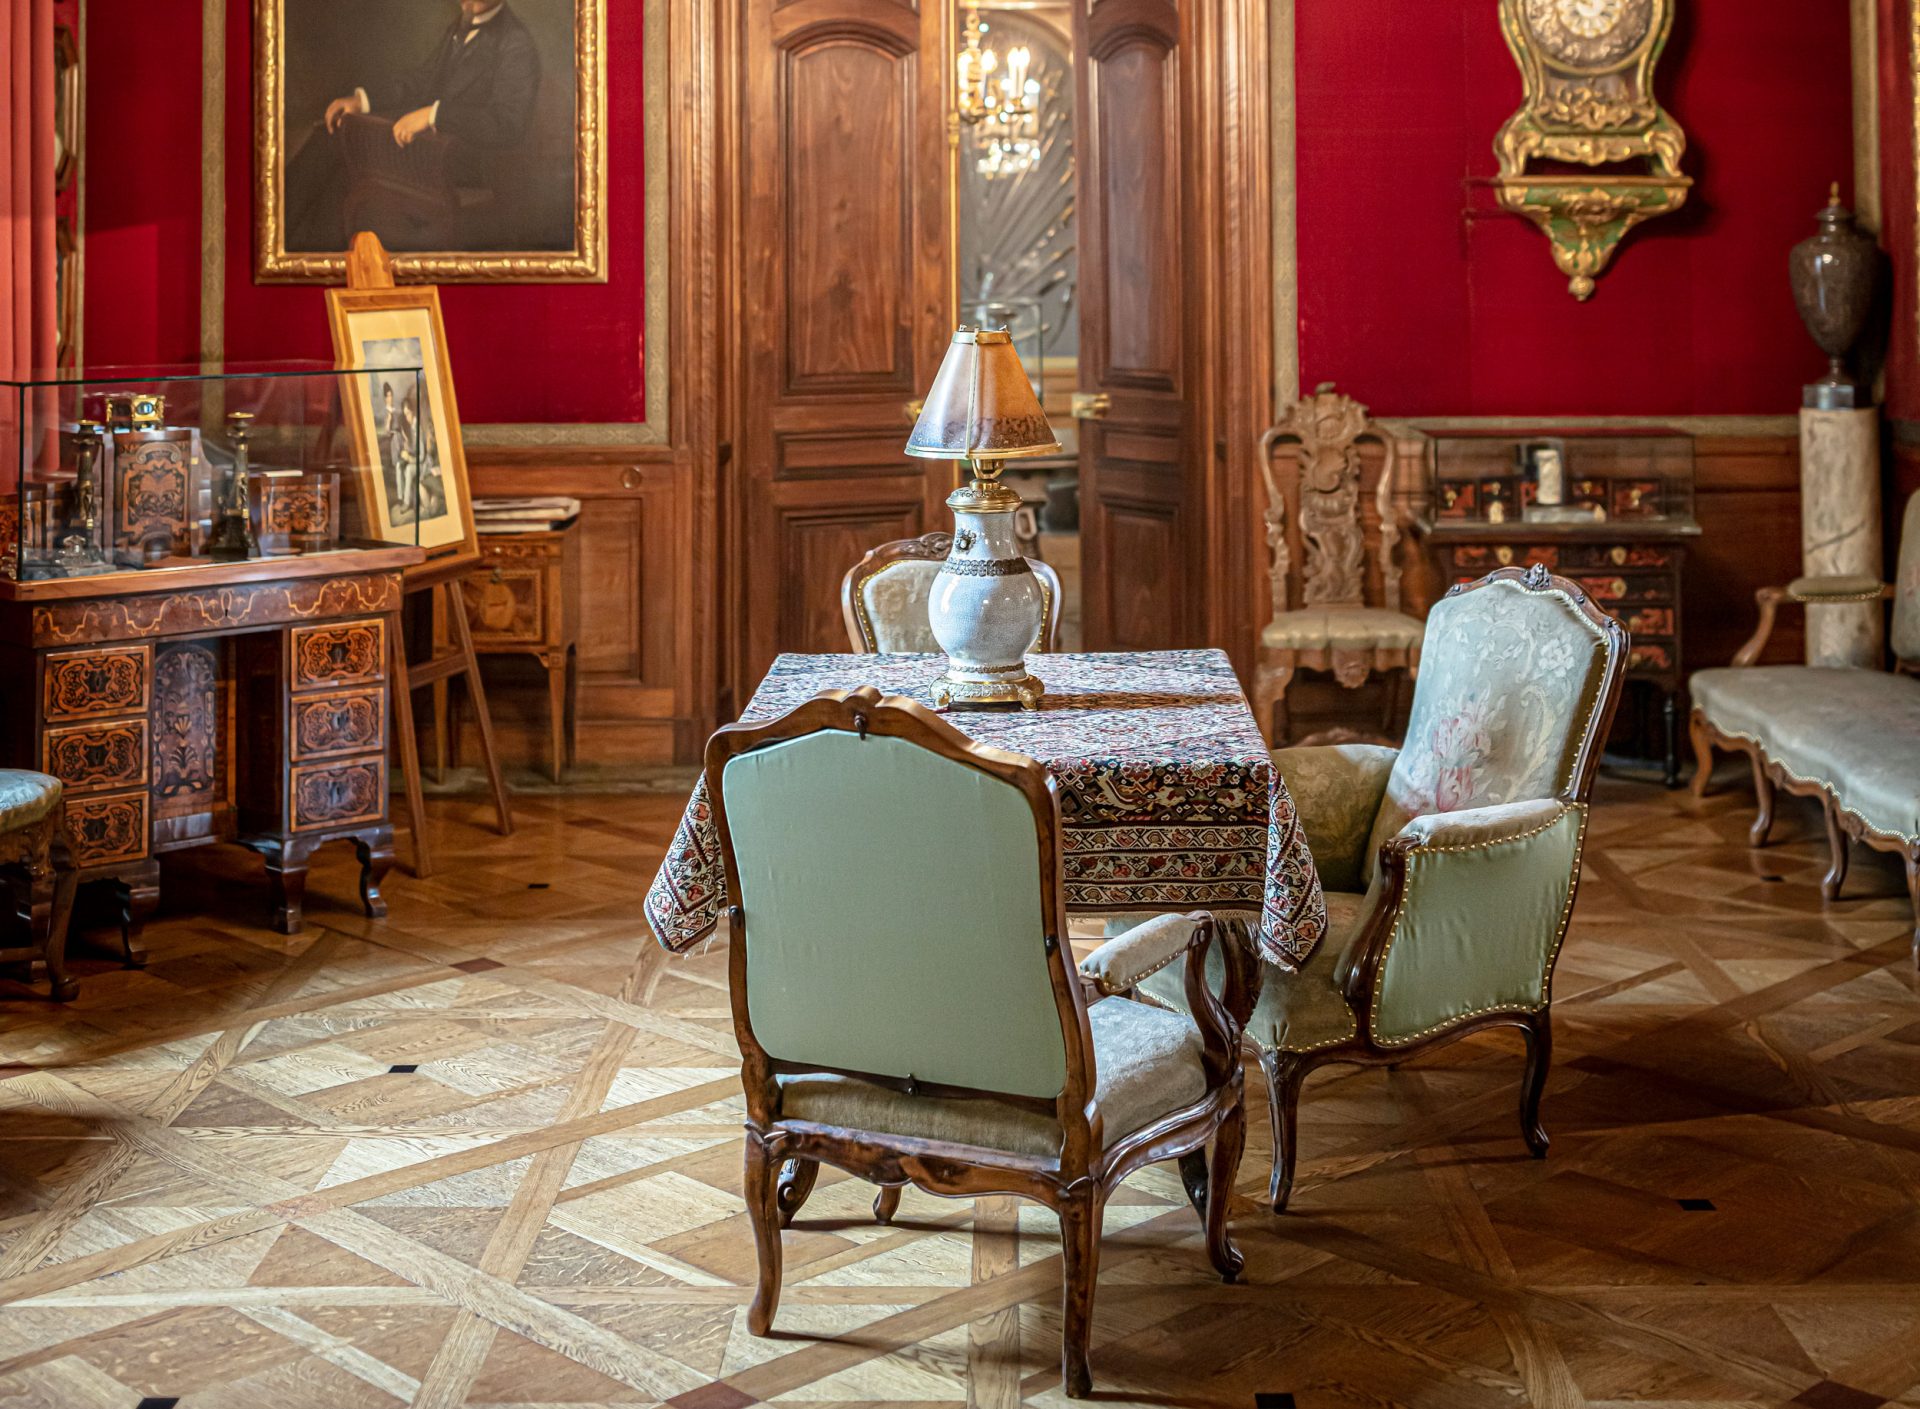 Ett rum med väggar klädda med mörkrött tyg. I mitten ett bord och stolar, en del tavlor på väggarna samt en stor ljuskrona i taket.